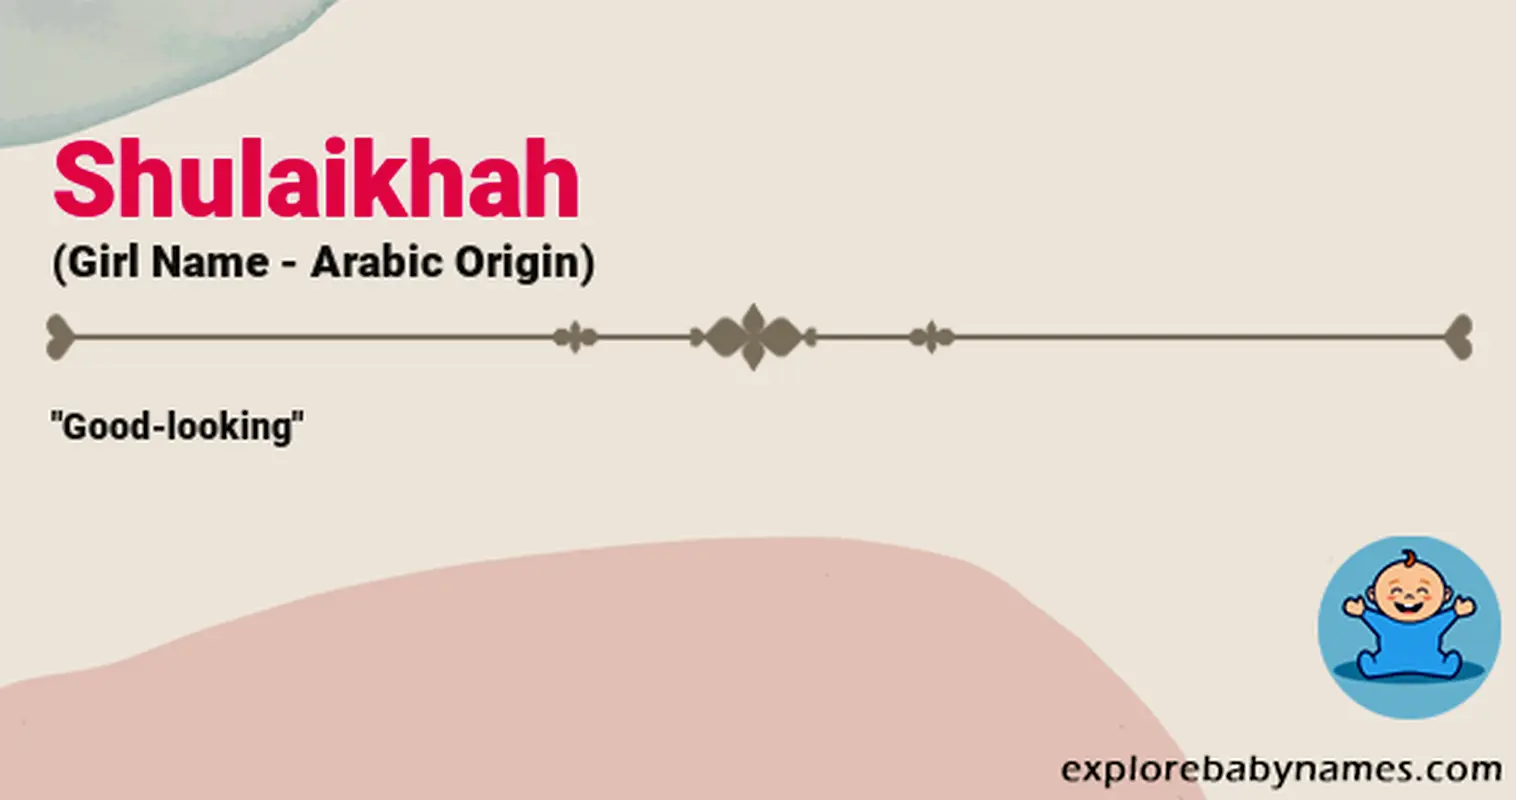 Meaning of Shulaikhah